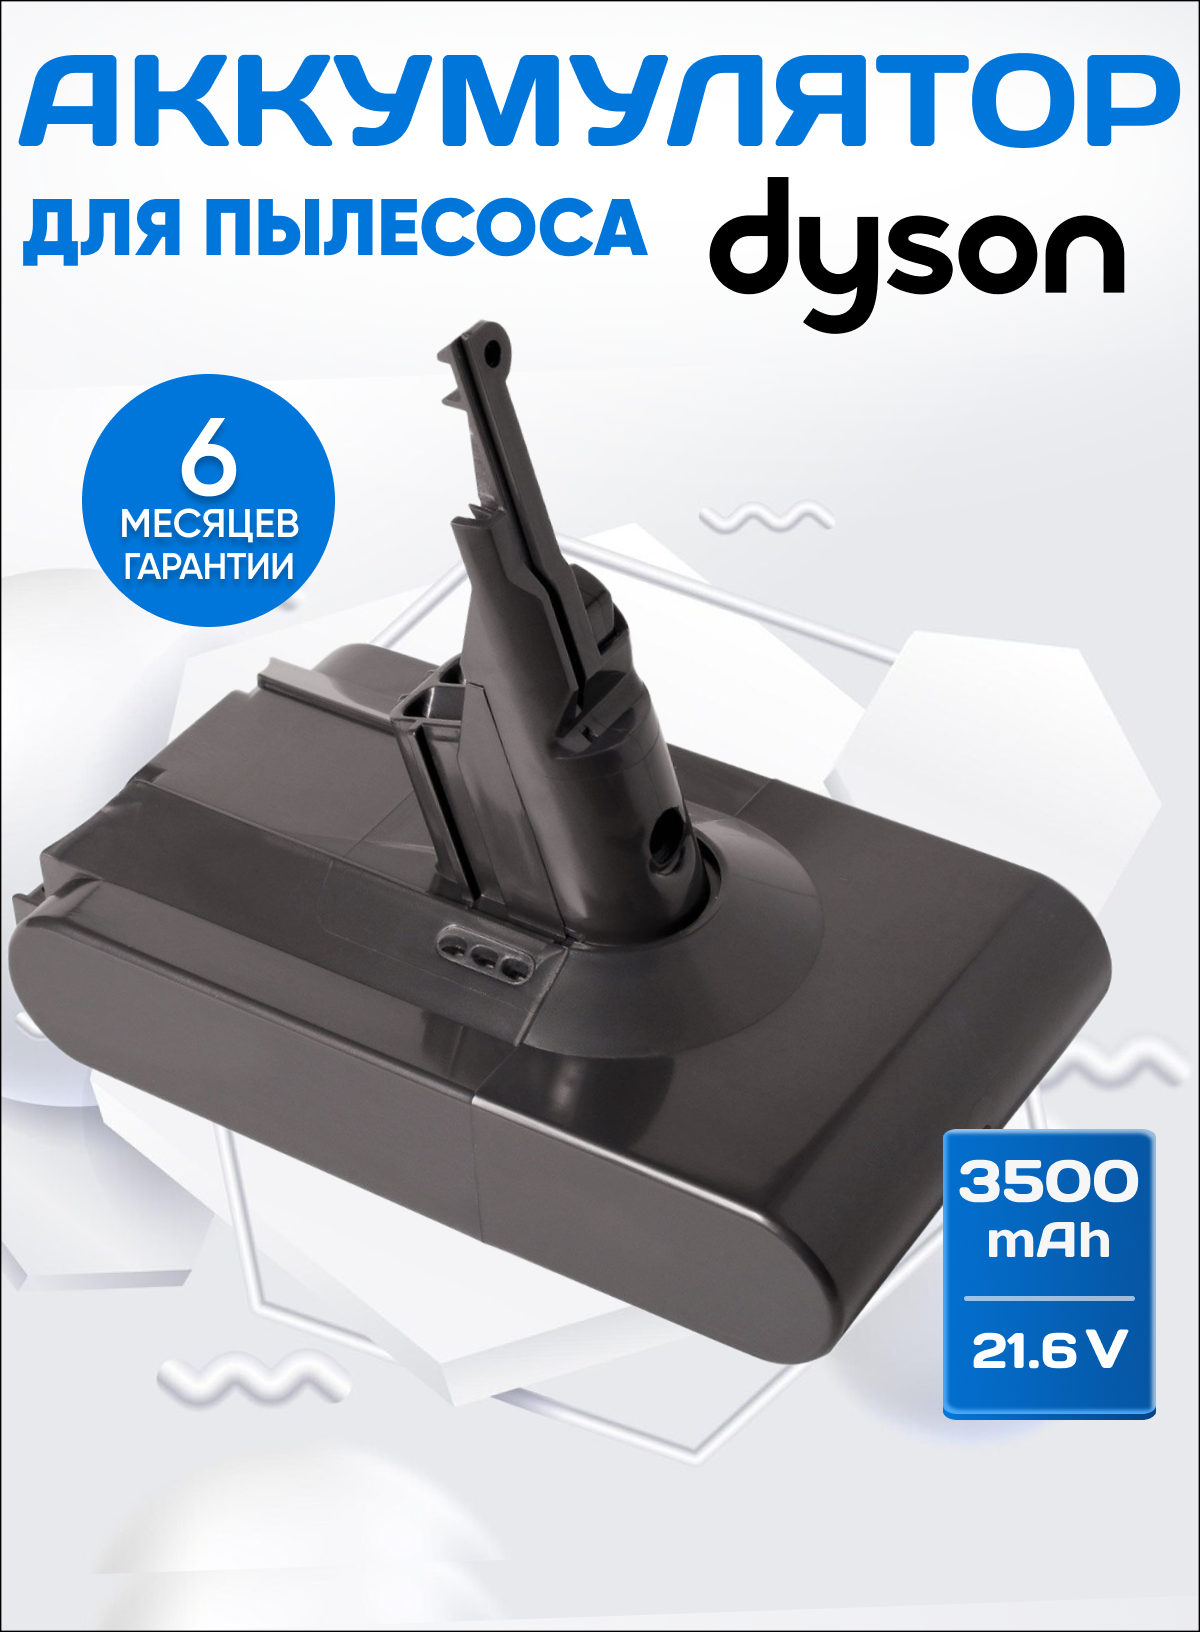 Аккумулятор для пылесоса Dyson SV10, SV10E, V8 series / 21,6V 3500mAh 75.6Wh серый